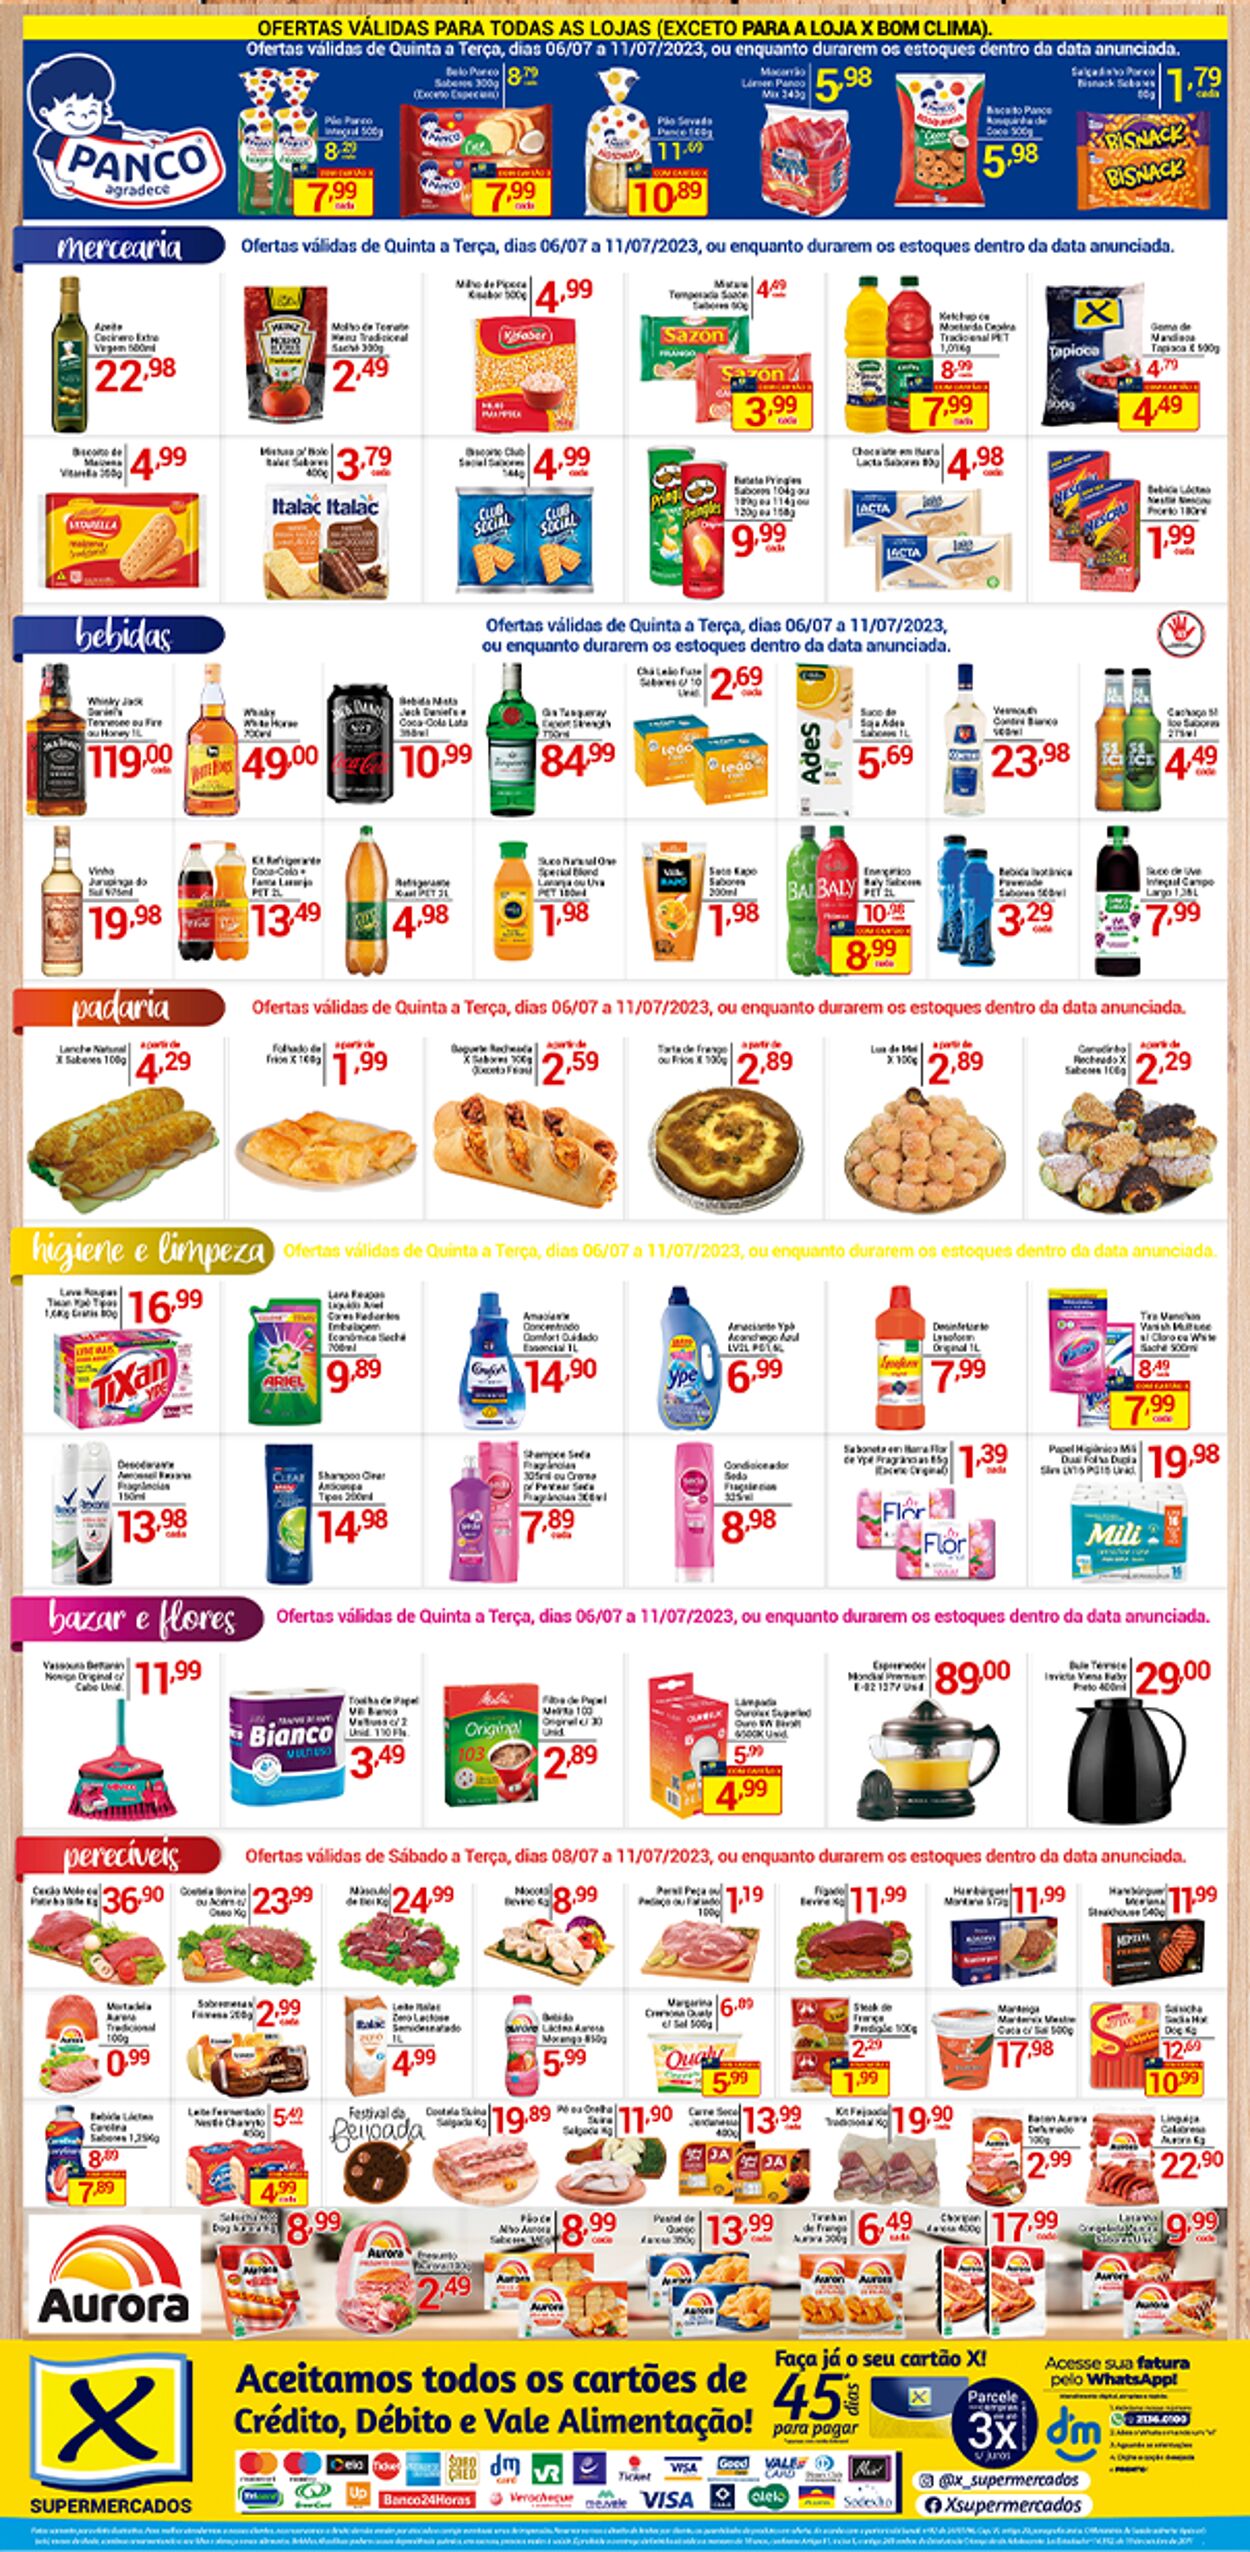 Folheto X Supermercados 06.07.2023 - 11.07.2023